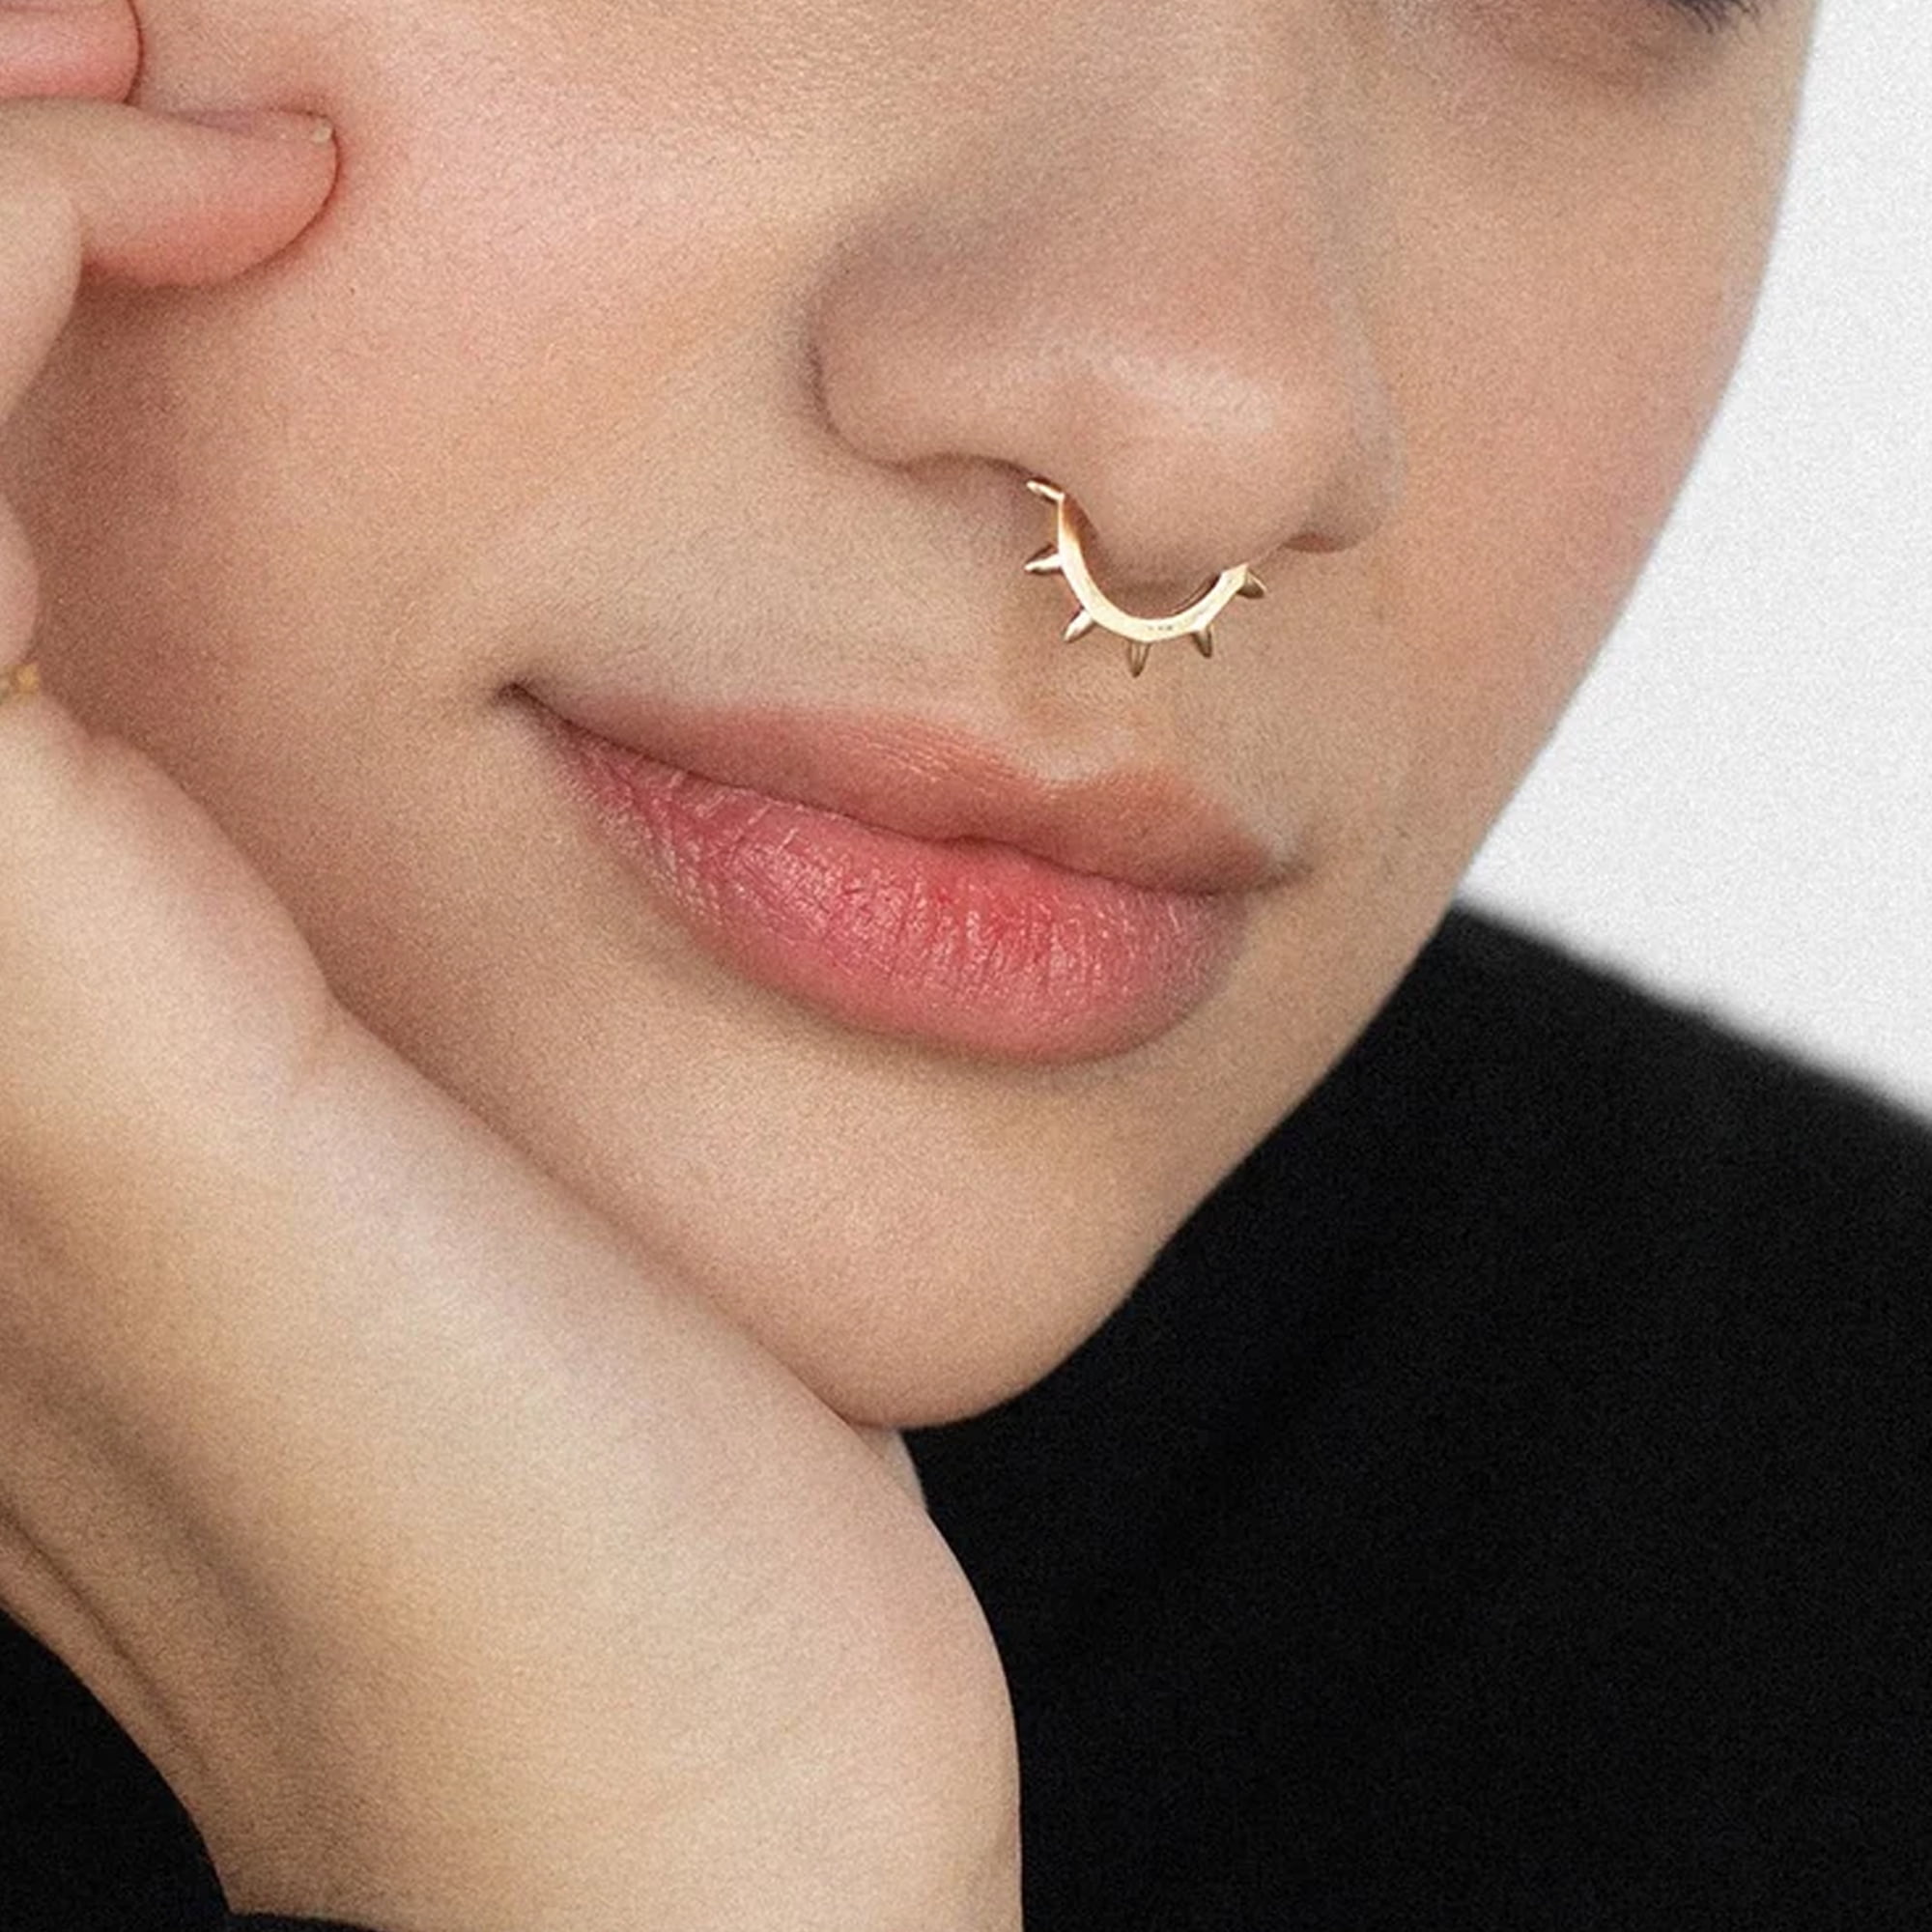 Pin on Nose piercing